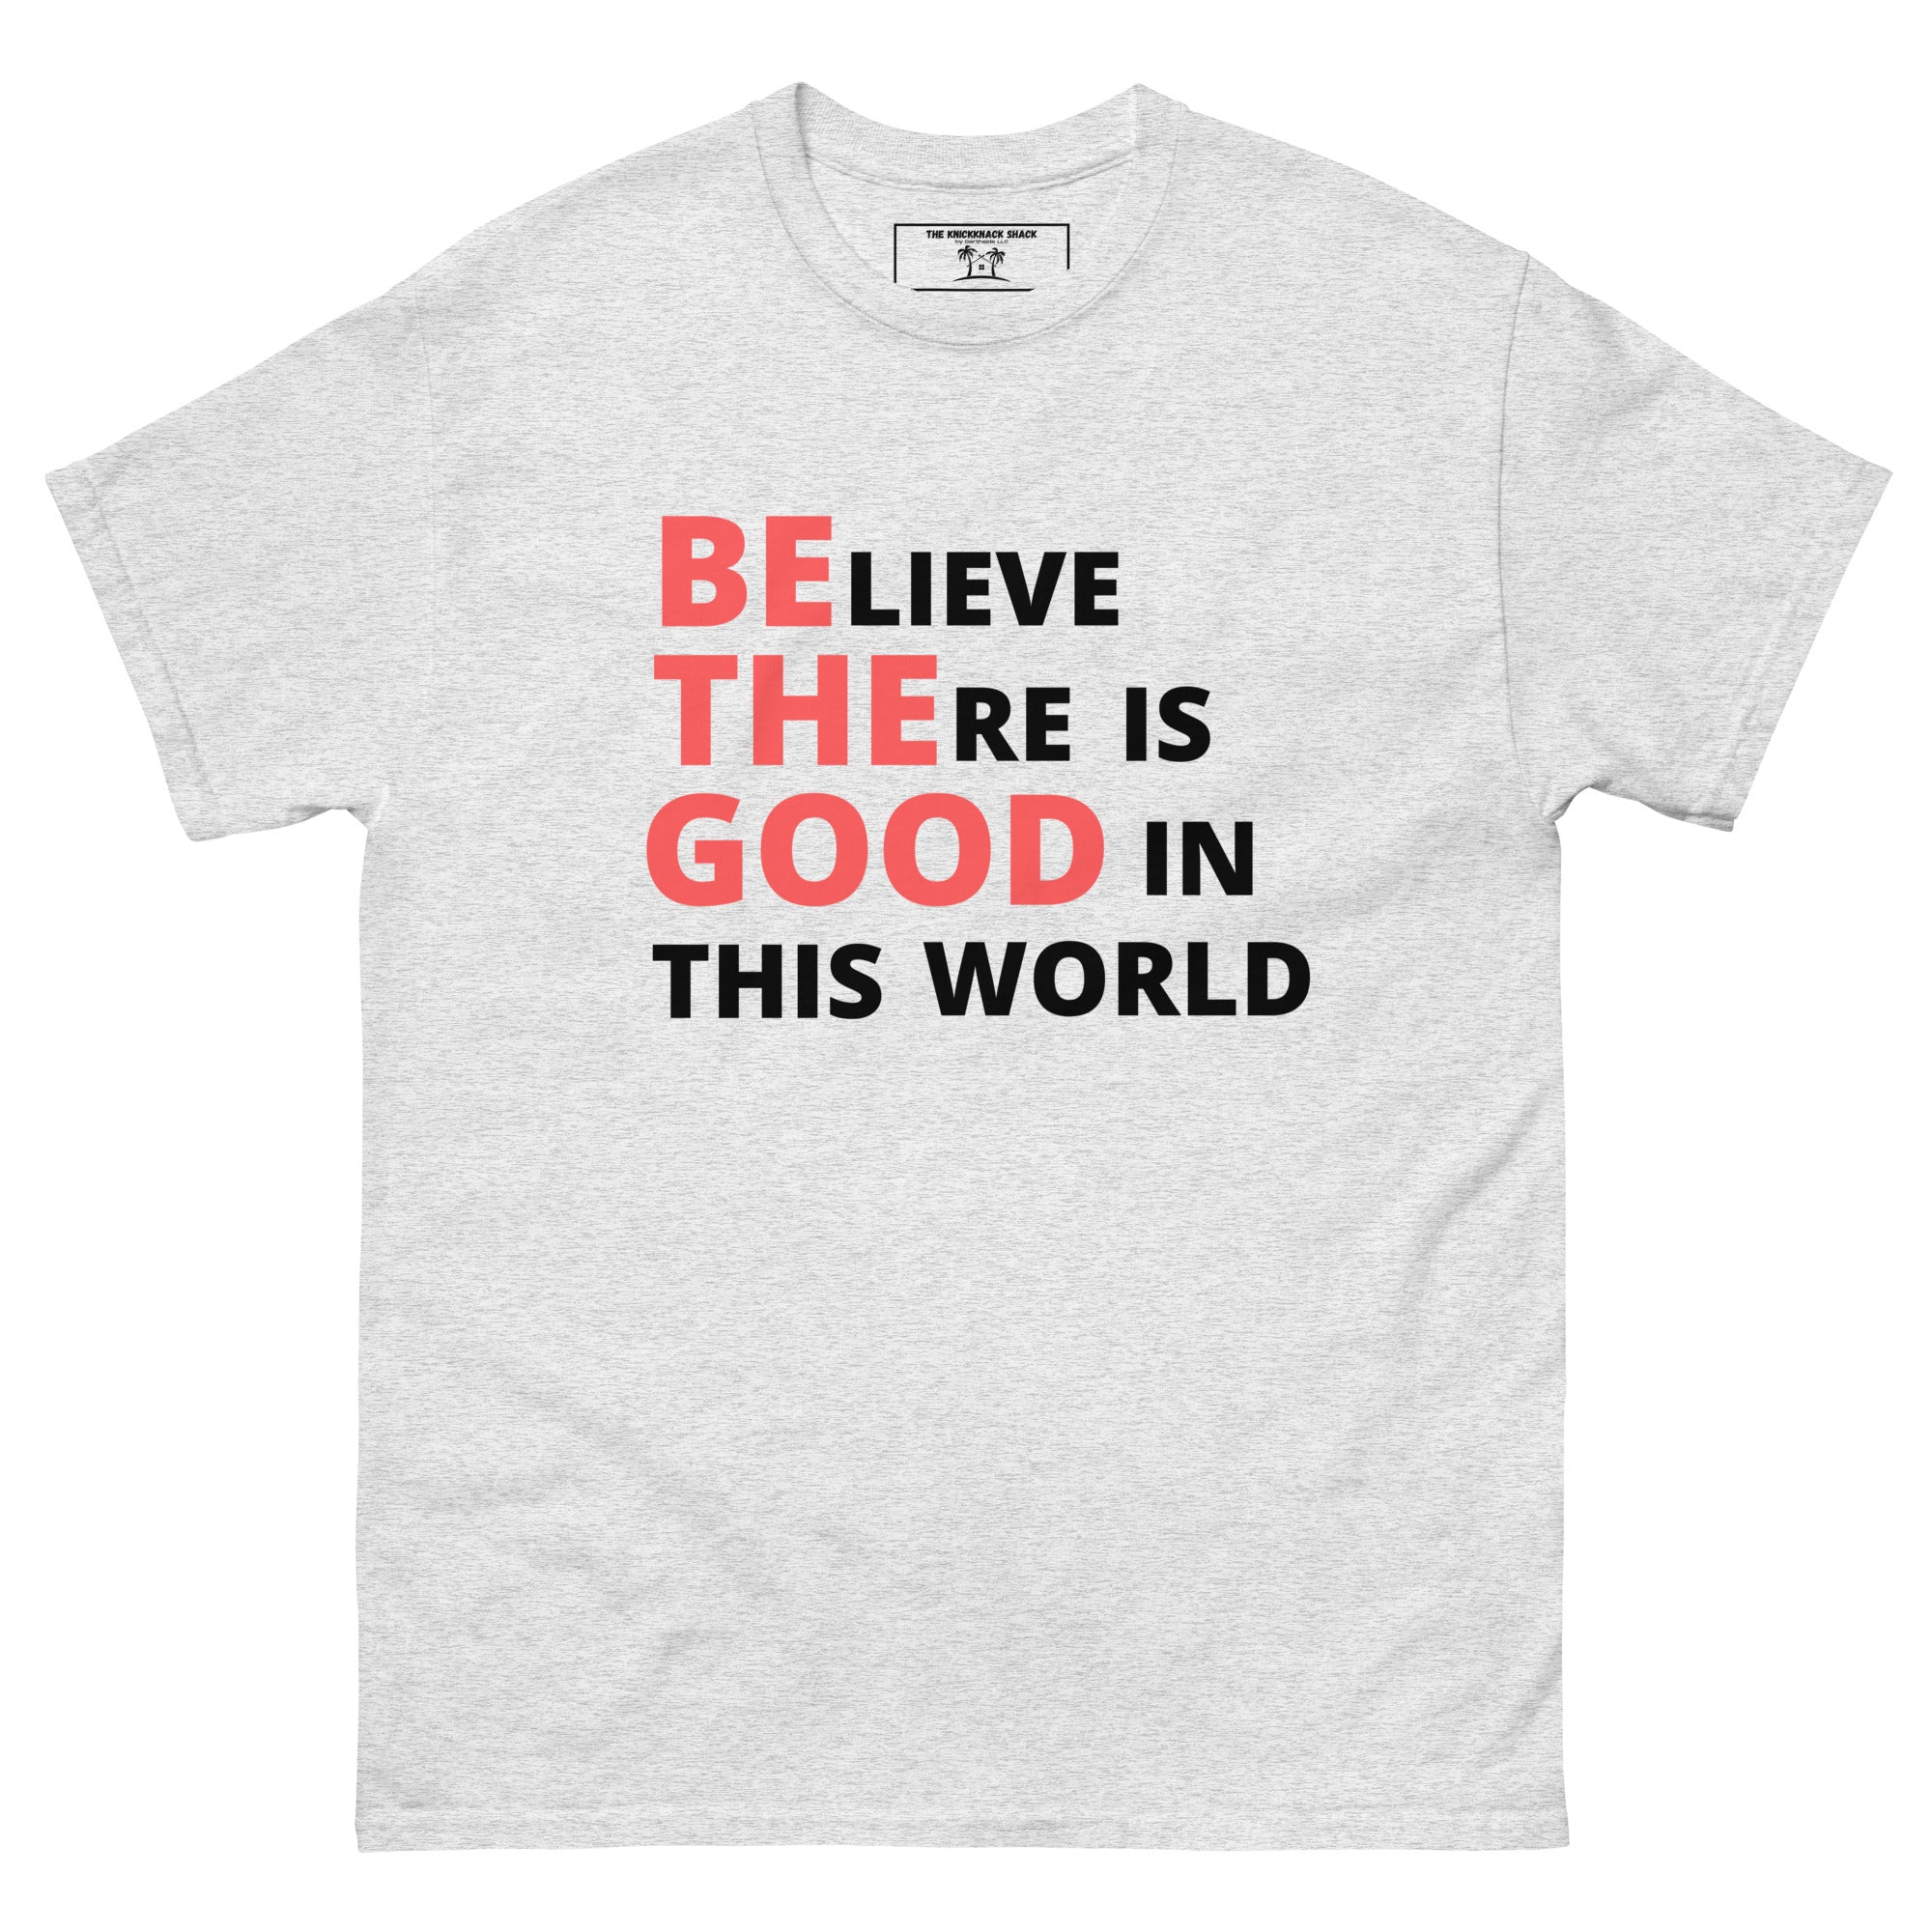 Camiseta clásica - Be The Good (colores claros)